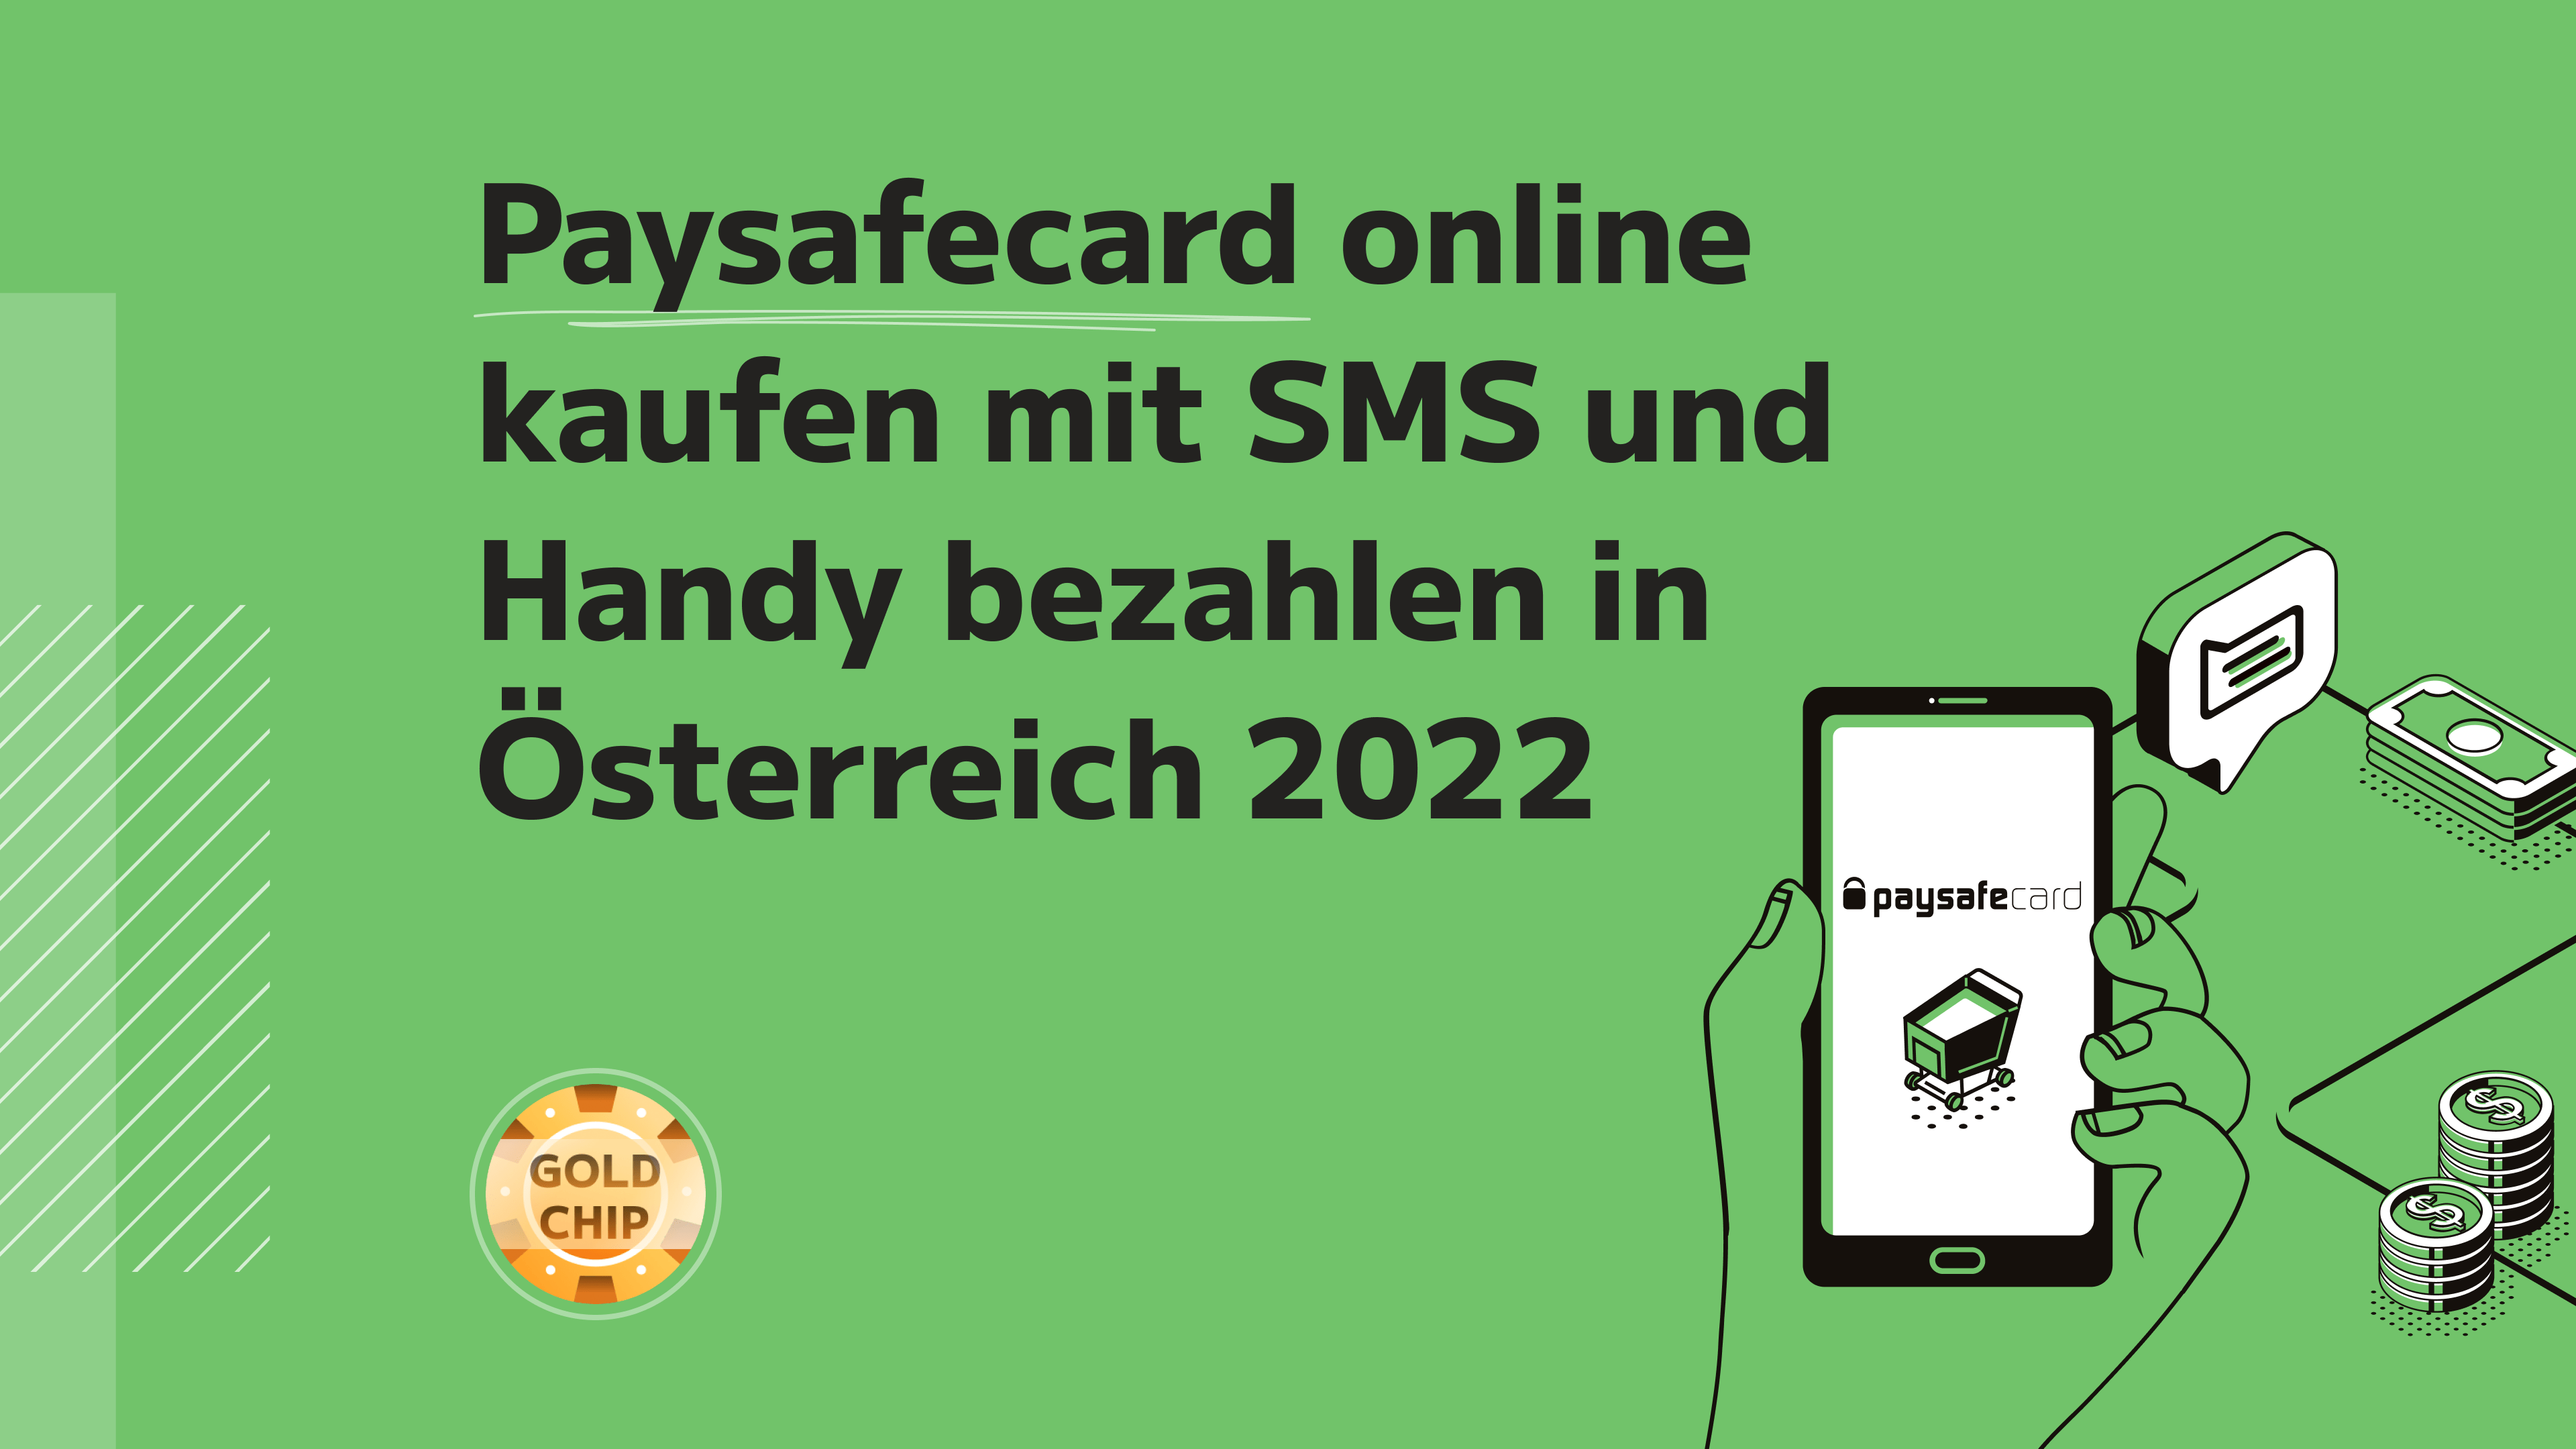 save bridge did it Paysafecard mit SMS und Handy kaufen Österreich: Wie | wo?